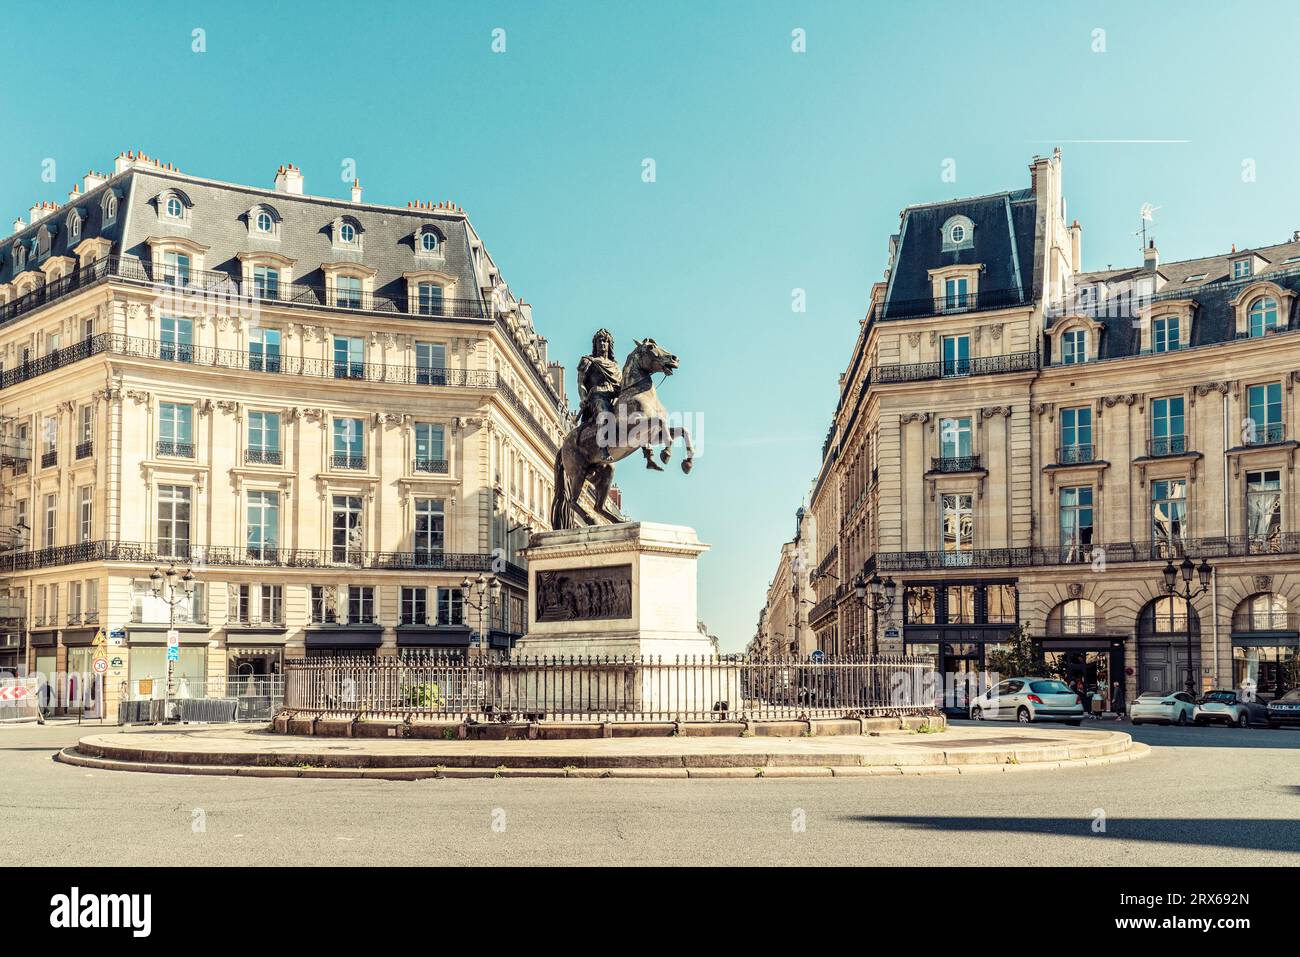 France, Ile-de-France, Paris, Statue of Louis XIV at Place des Victoires square Stock Photo